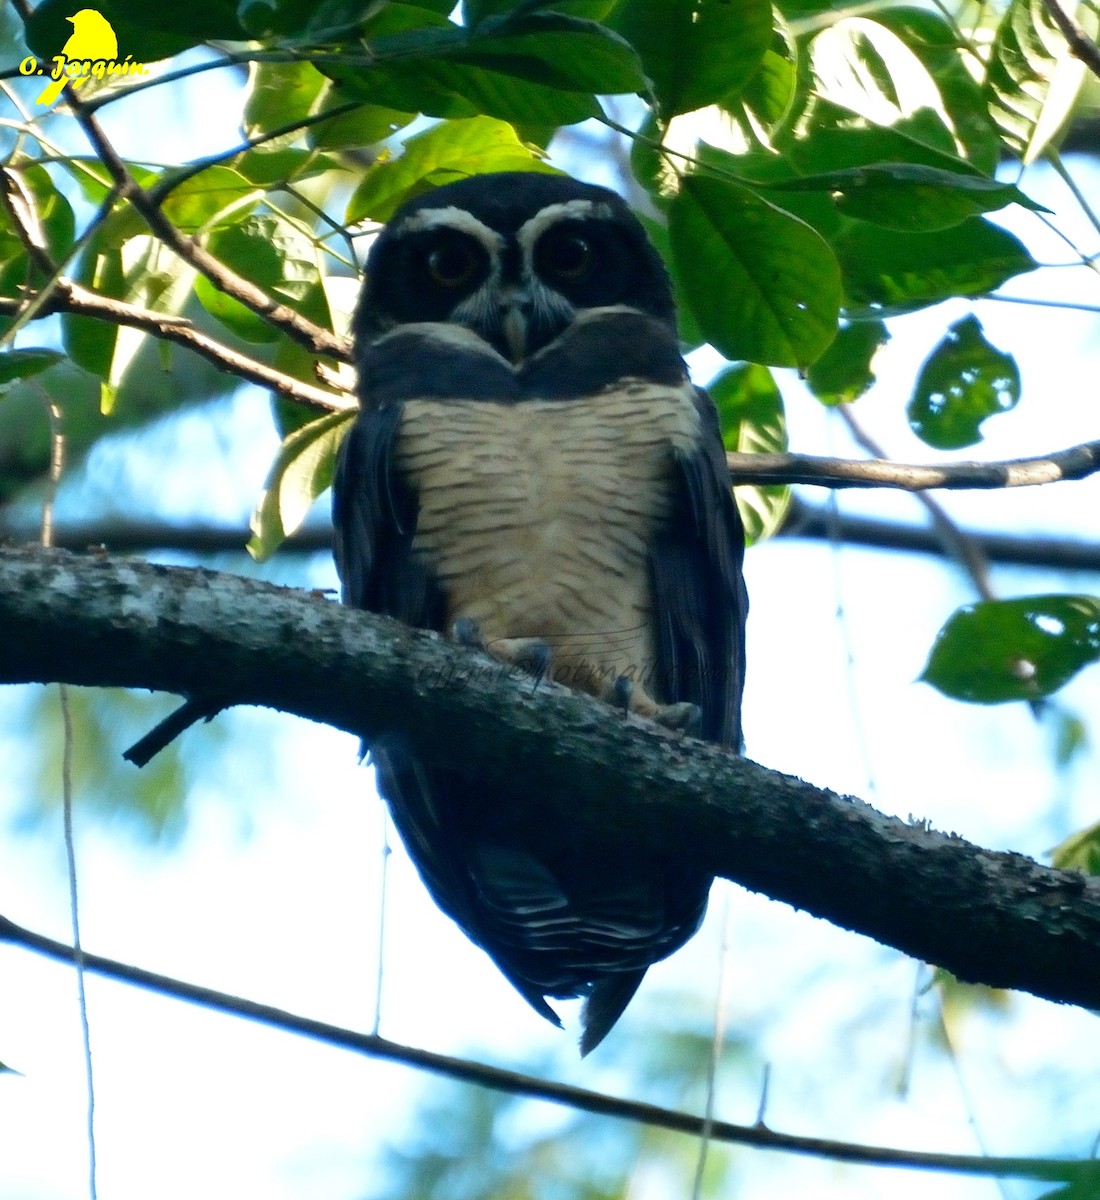 Spectacled Owl - Orlando Jarquín